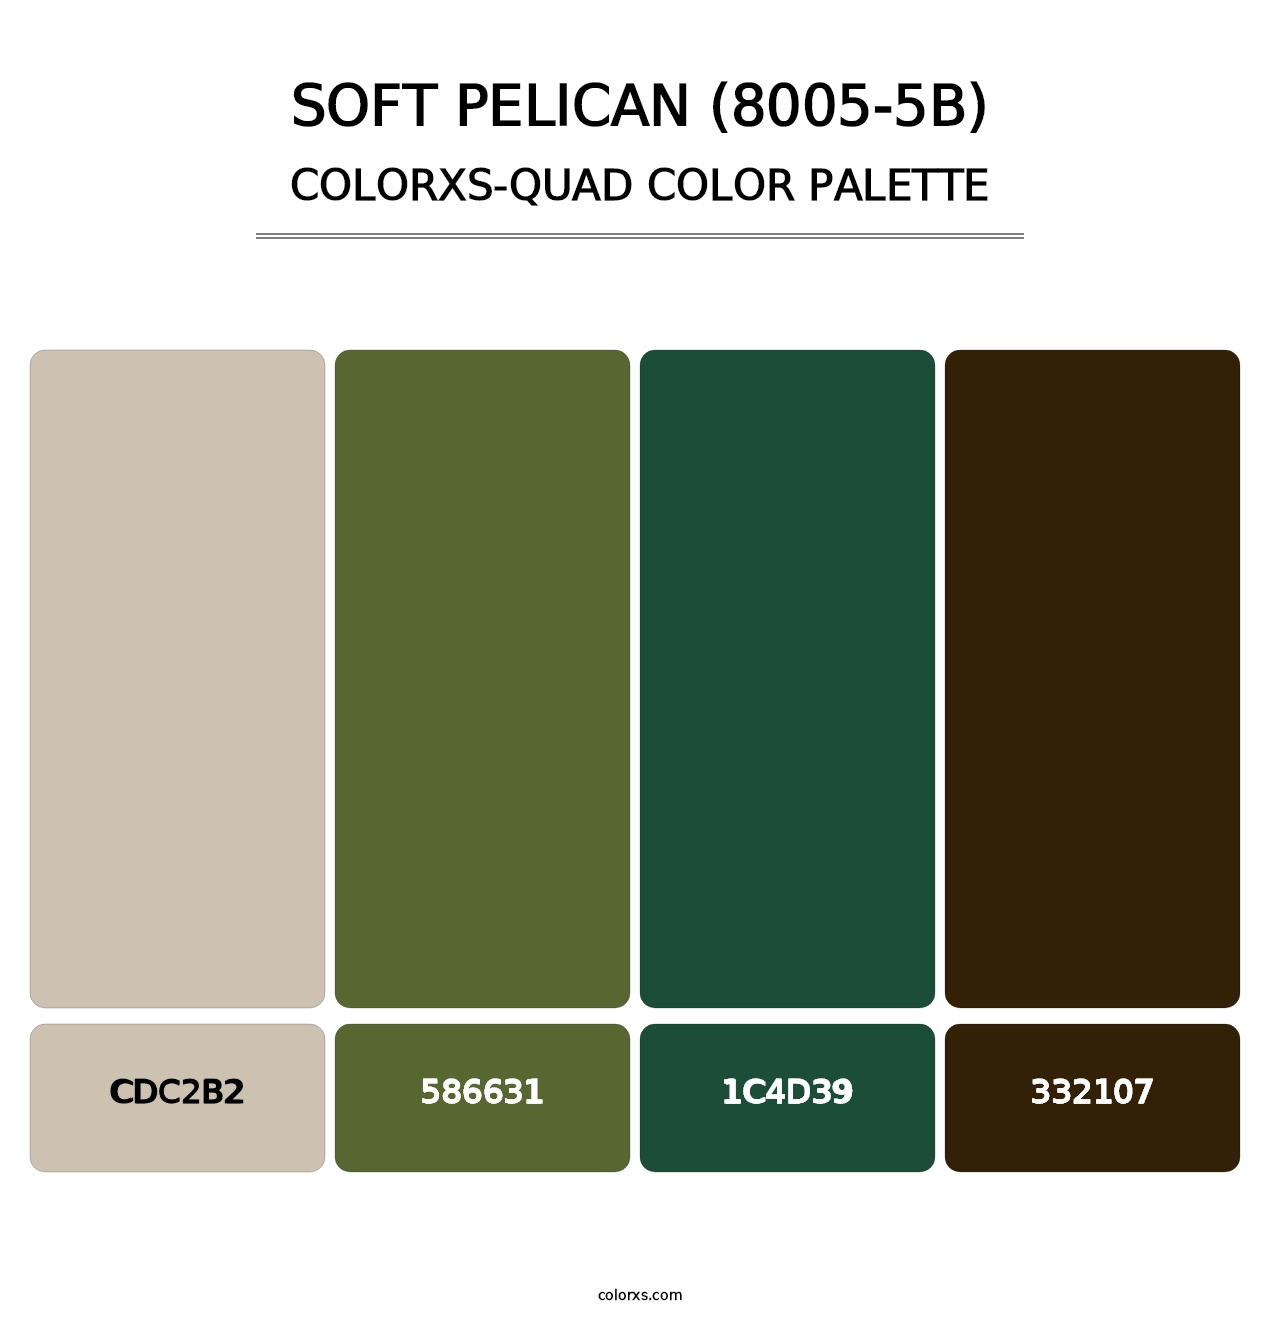 Soft Pelican (8005-5B) - Colorxs Quad Palette